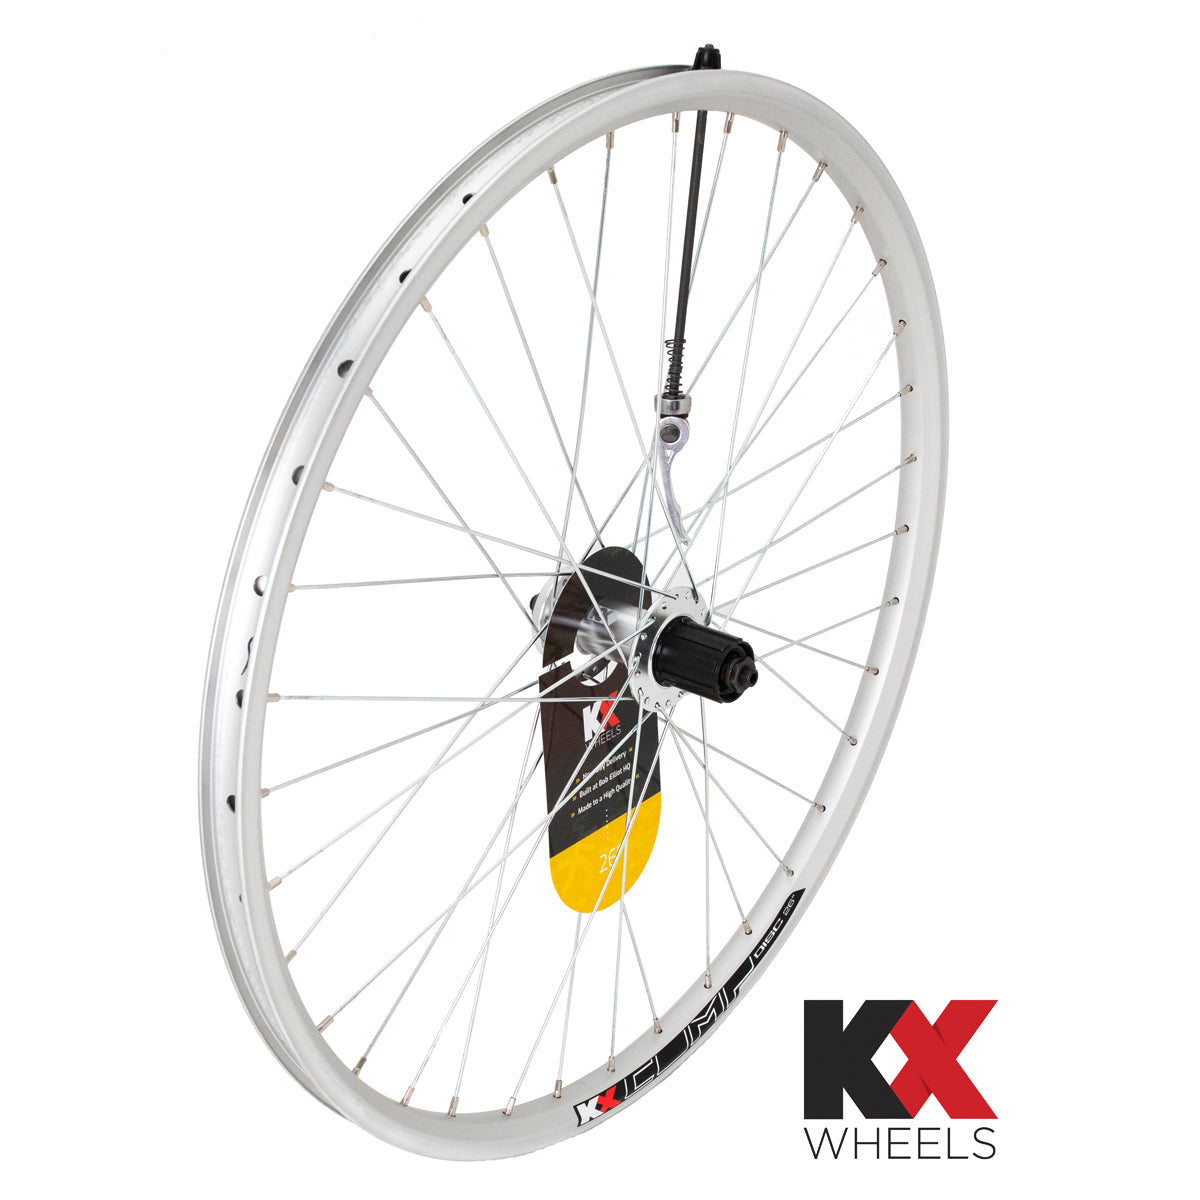 KX Wheels Double Wall QR Disc Cassette 26 Inch Rear Bike Wheel Silver